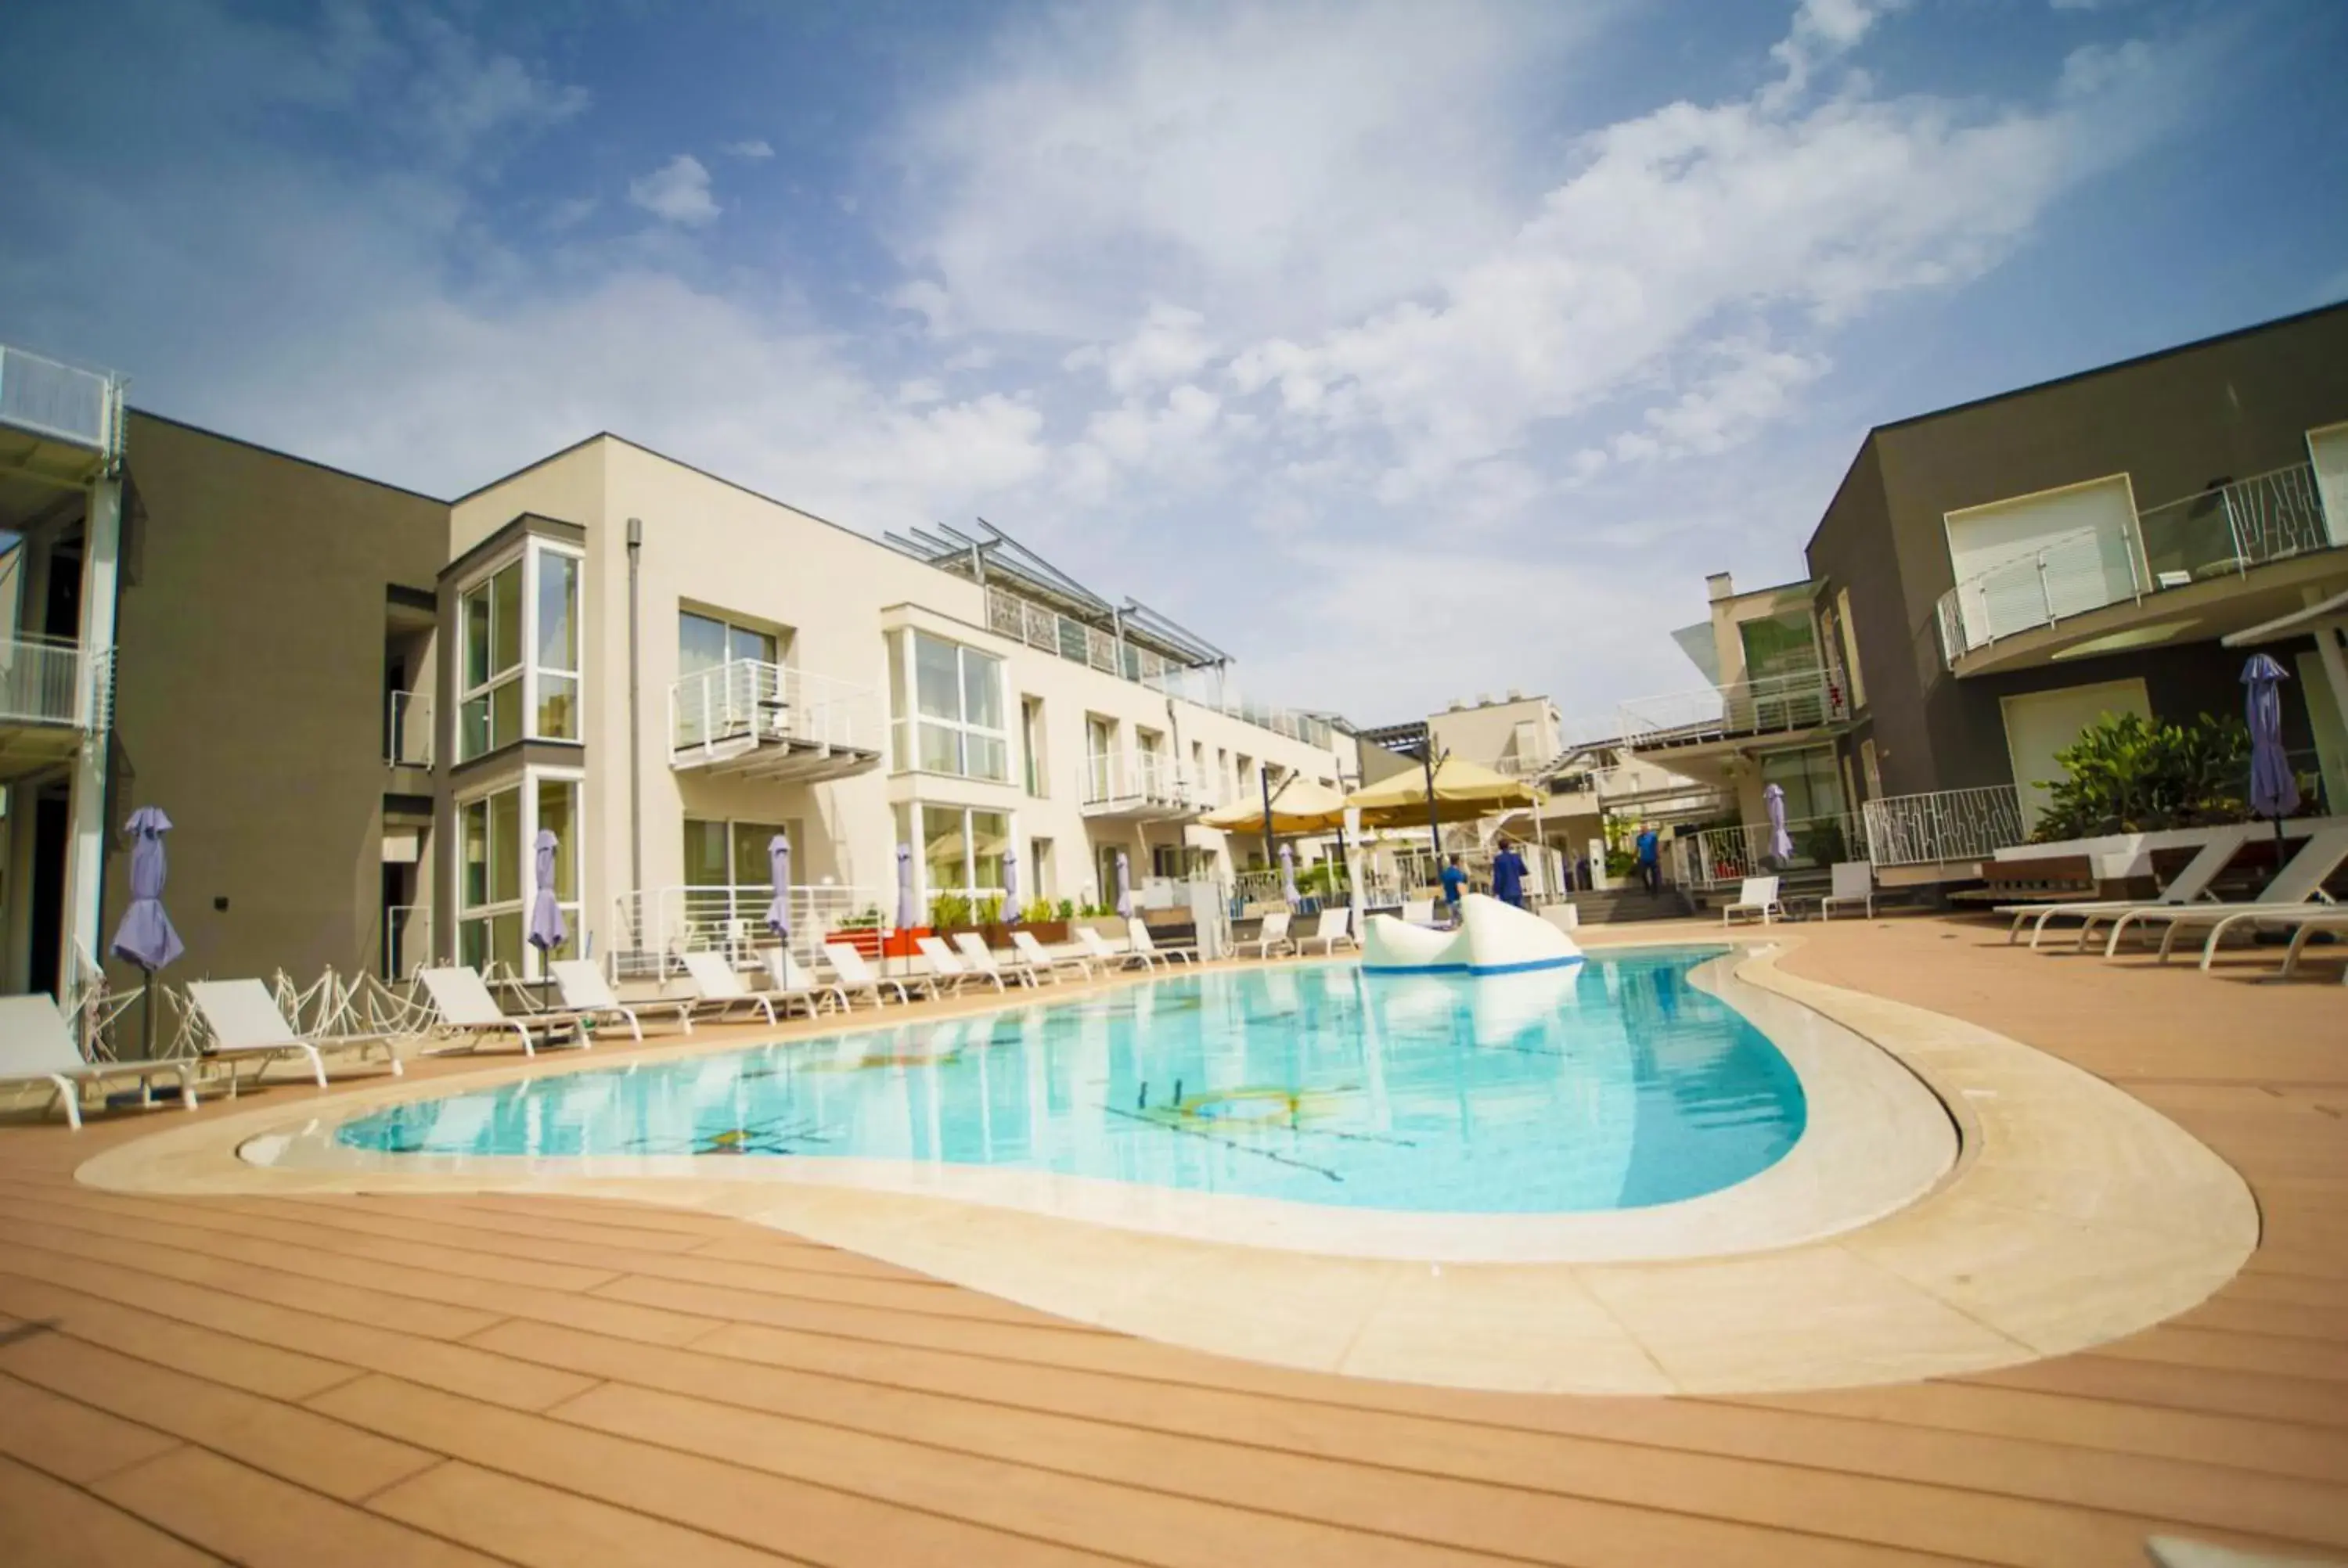 Swimming pool in Hotel Malavoglia